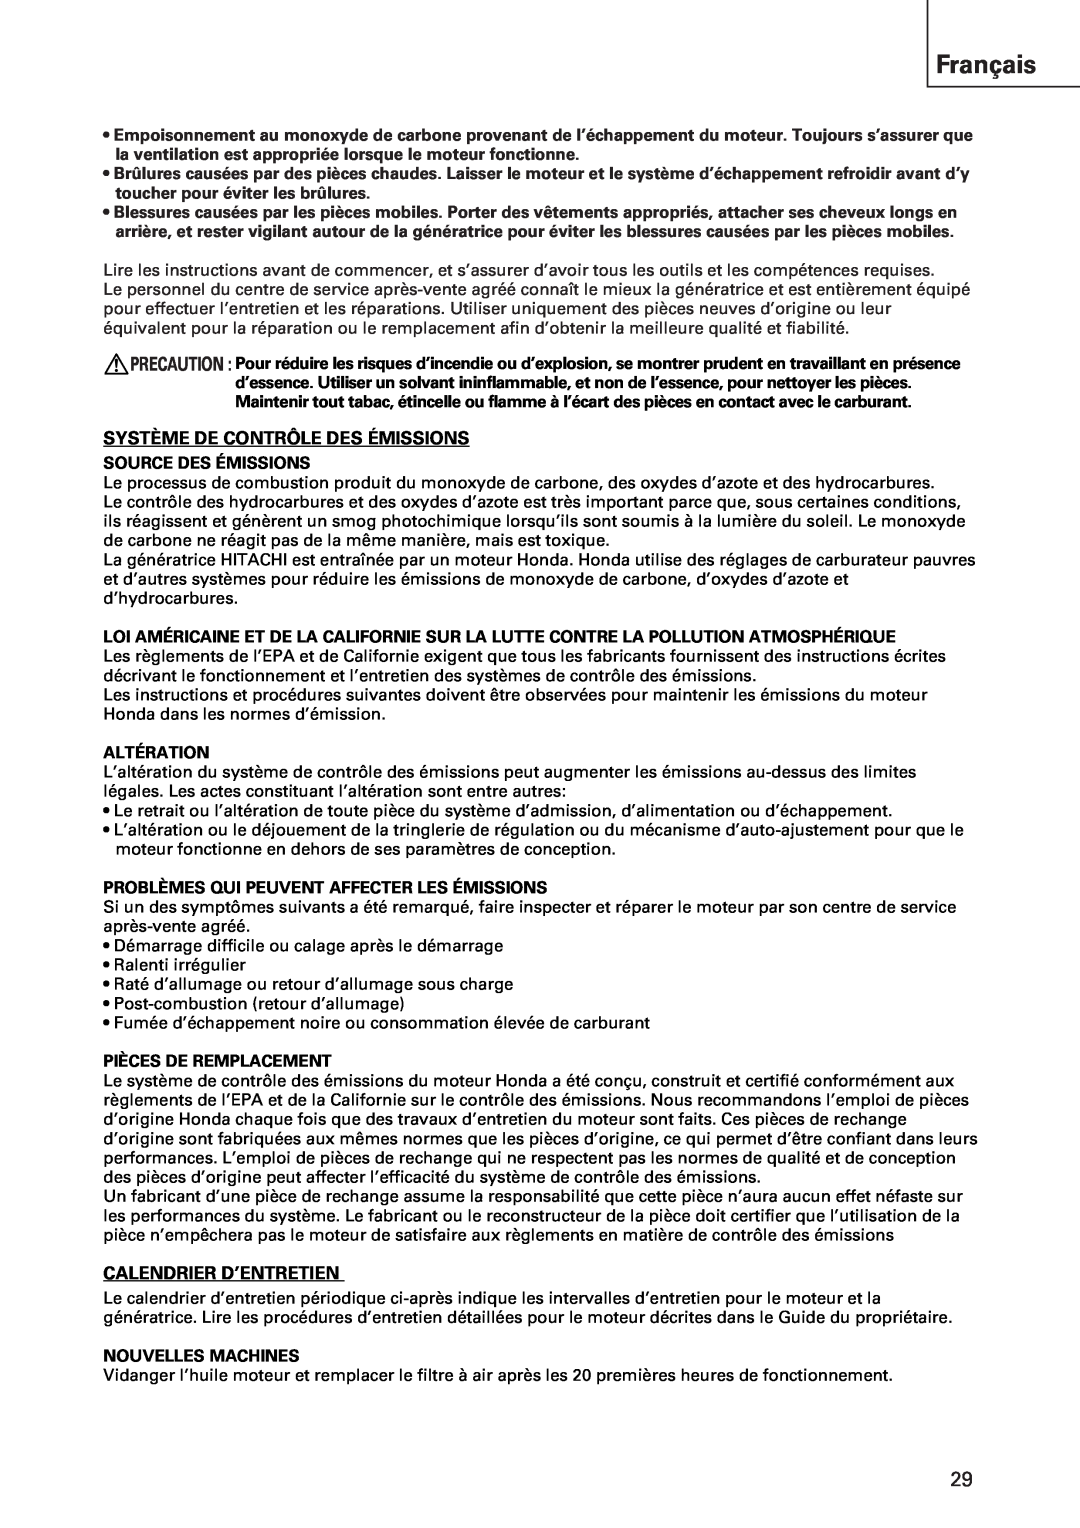 Hitachi E43 instruction manual Français, Système De Contrôle Des Émissions, Calendrier D’Entretien 